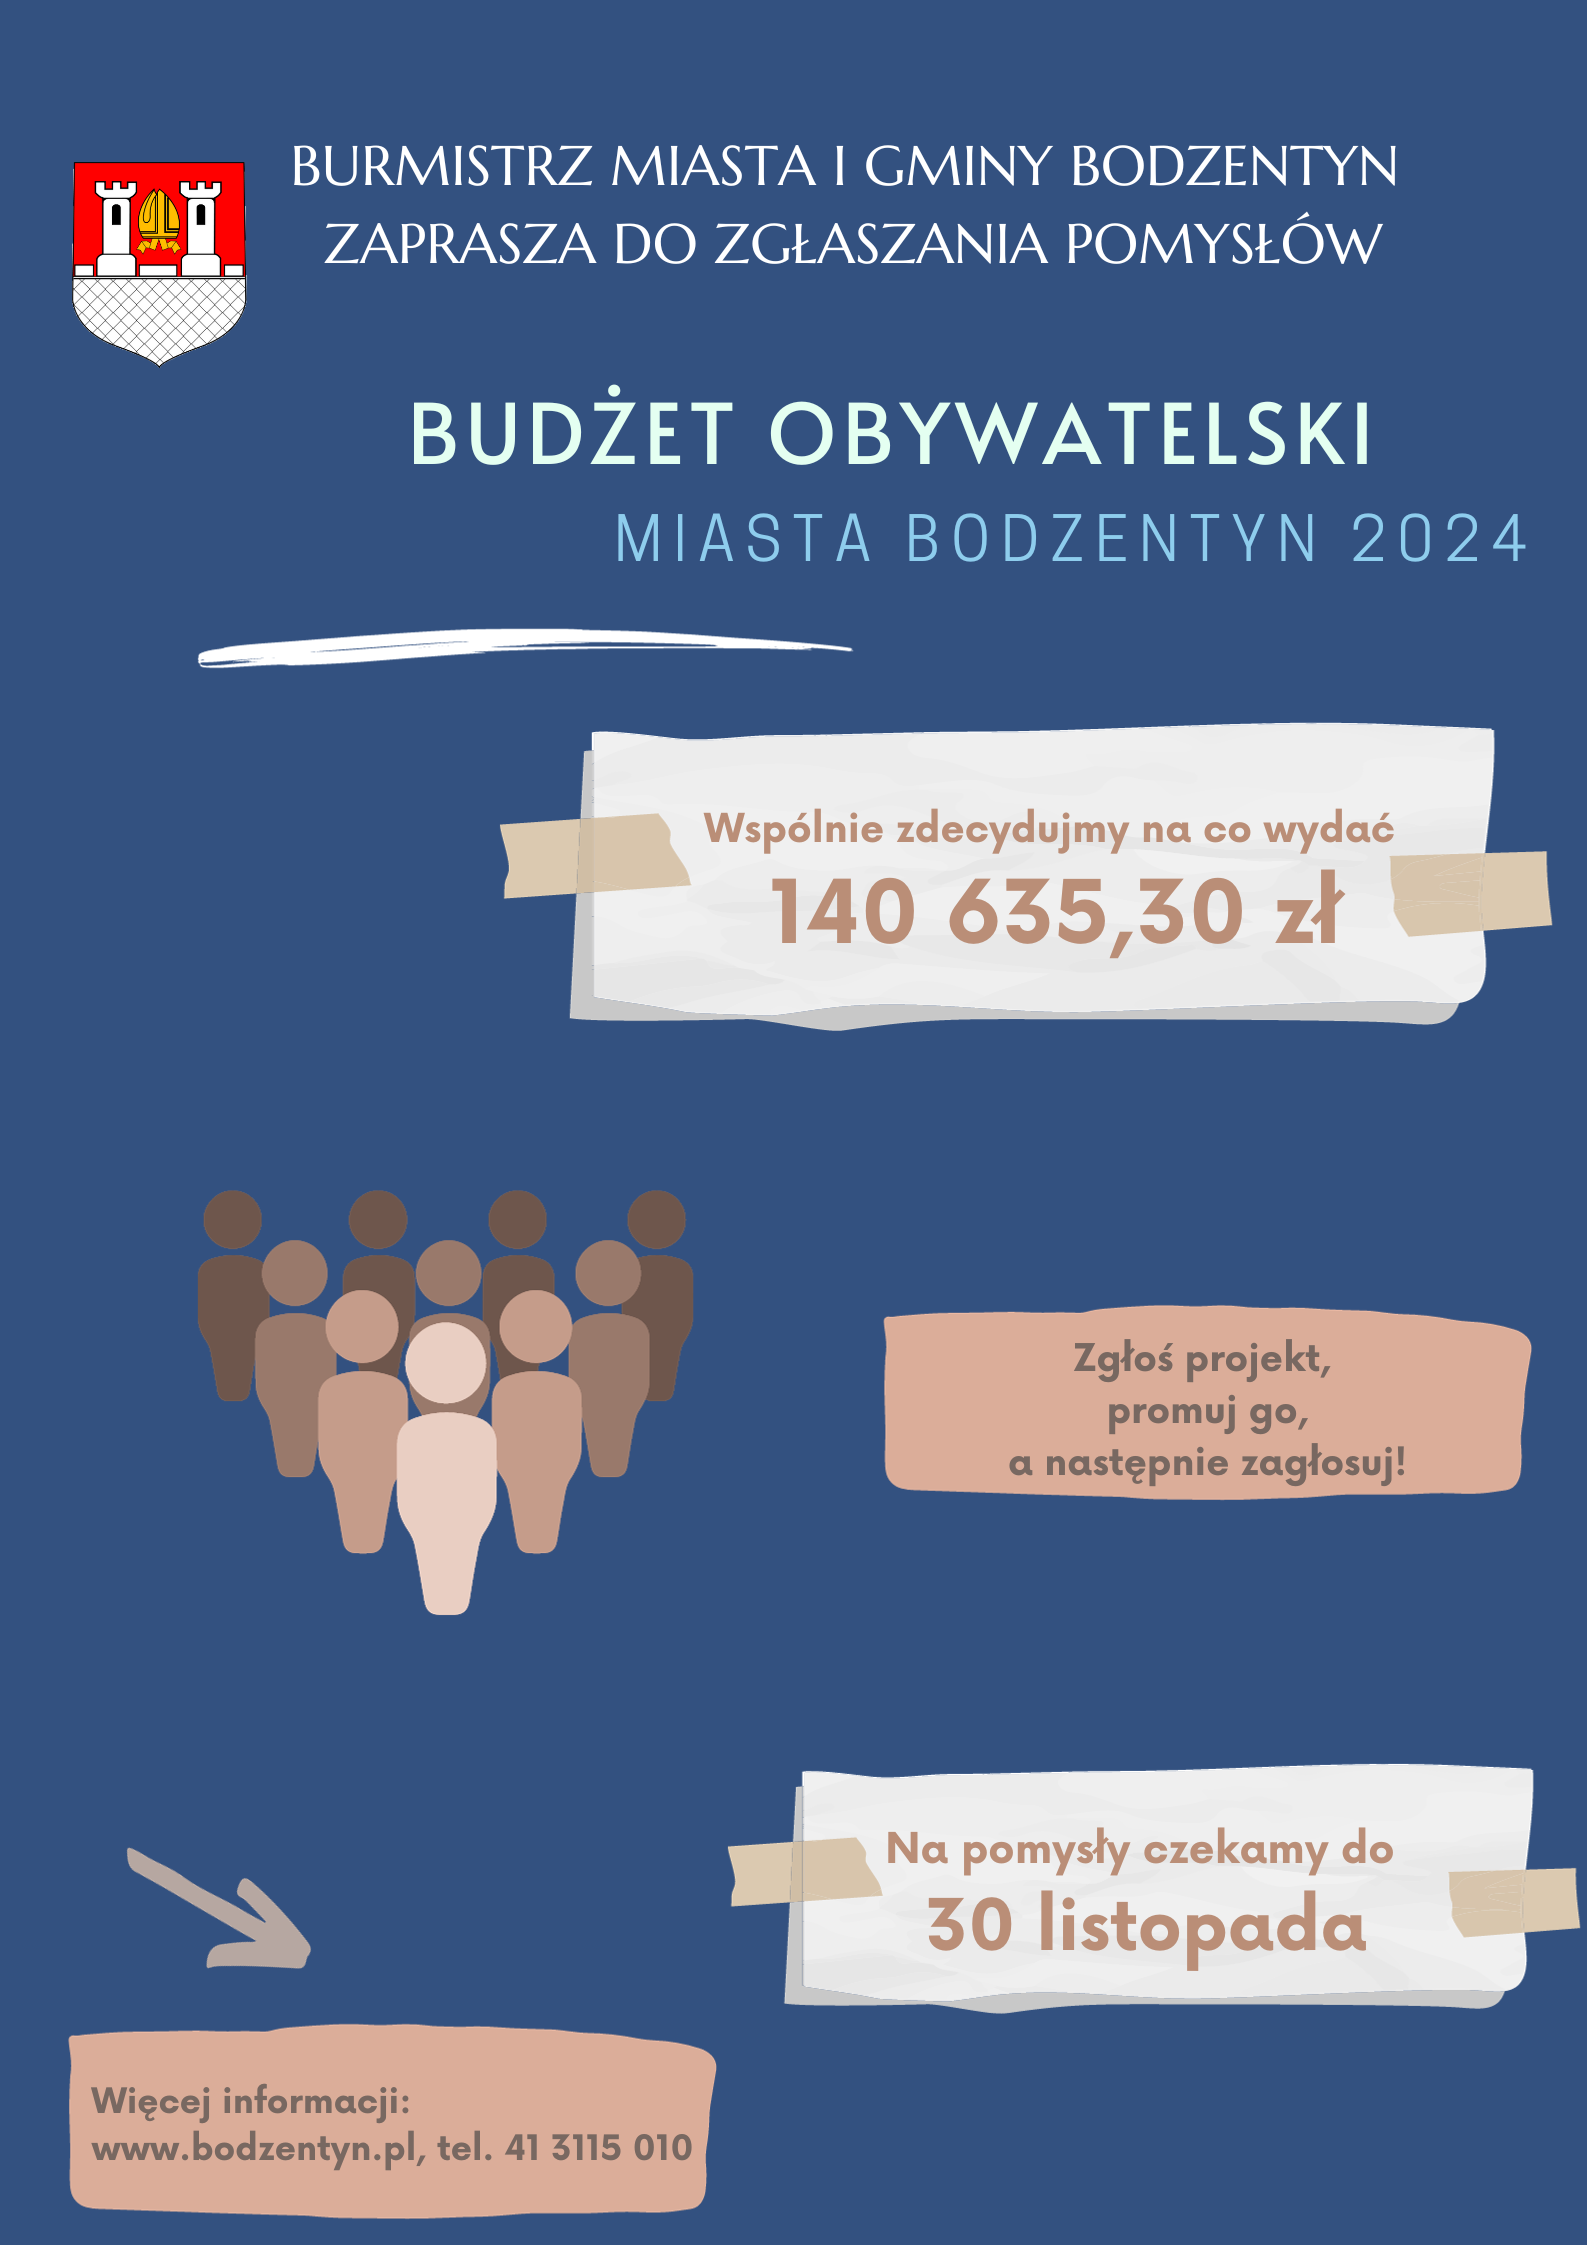 Budżet Obywatelski Miasta Bodzentyn 2024 - na zgłoszenie projektu zostało już tylko kilka dni!